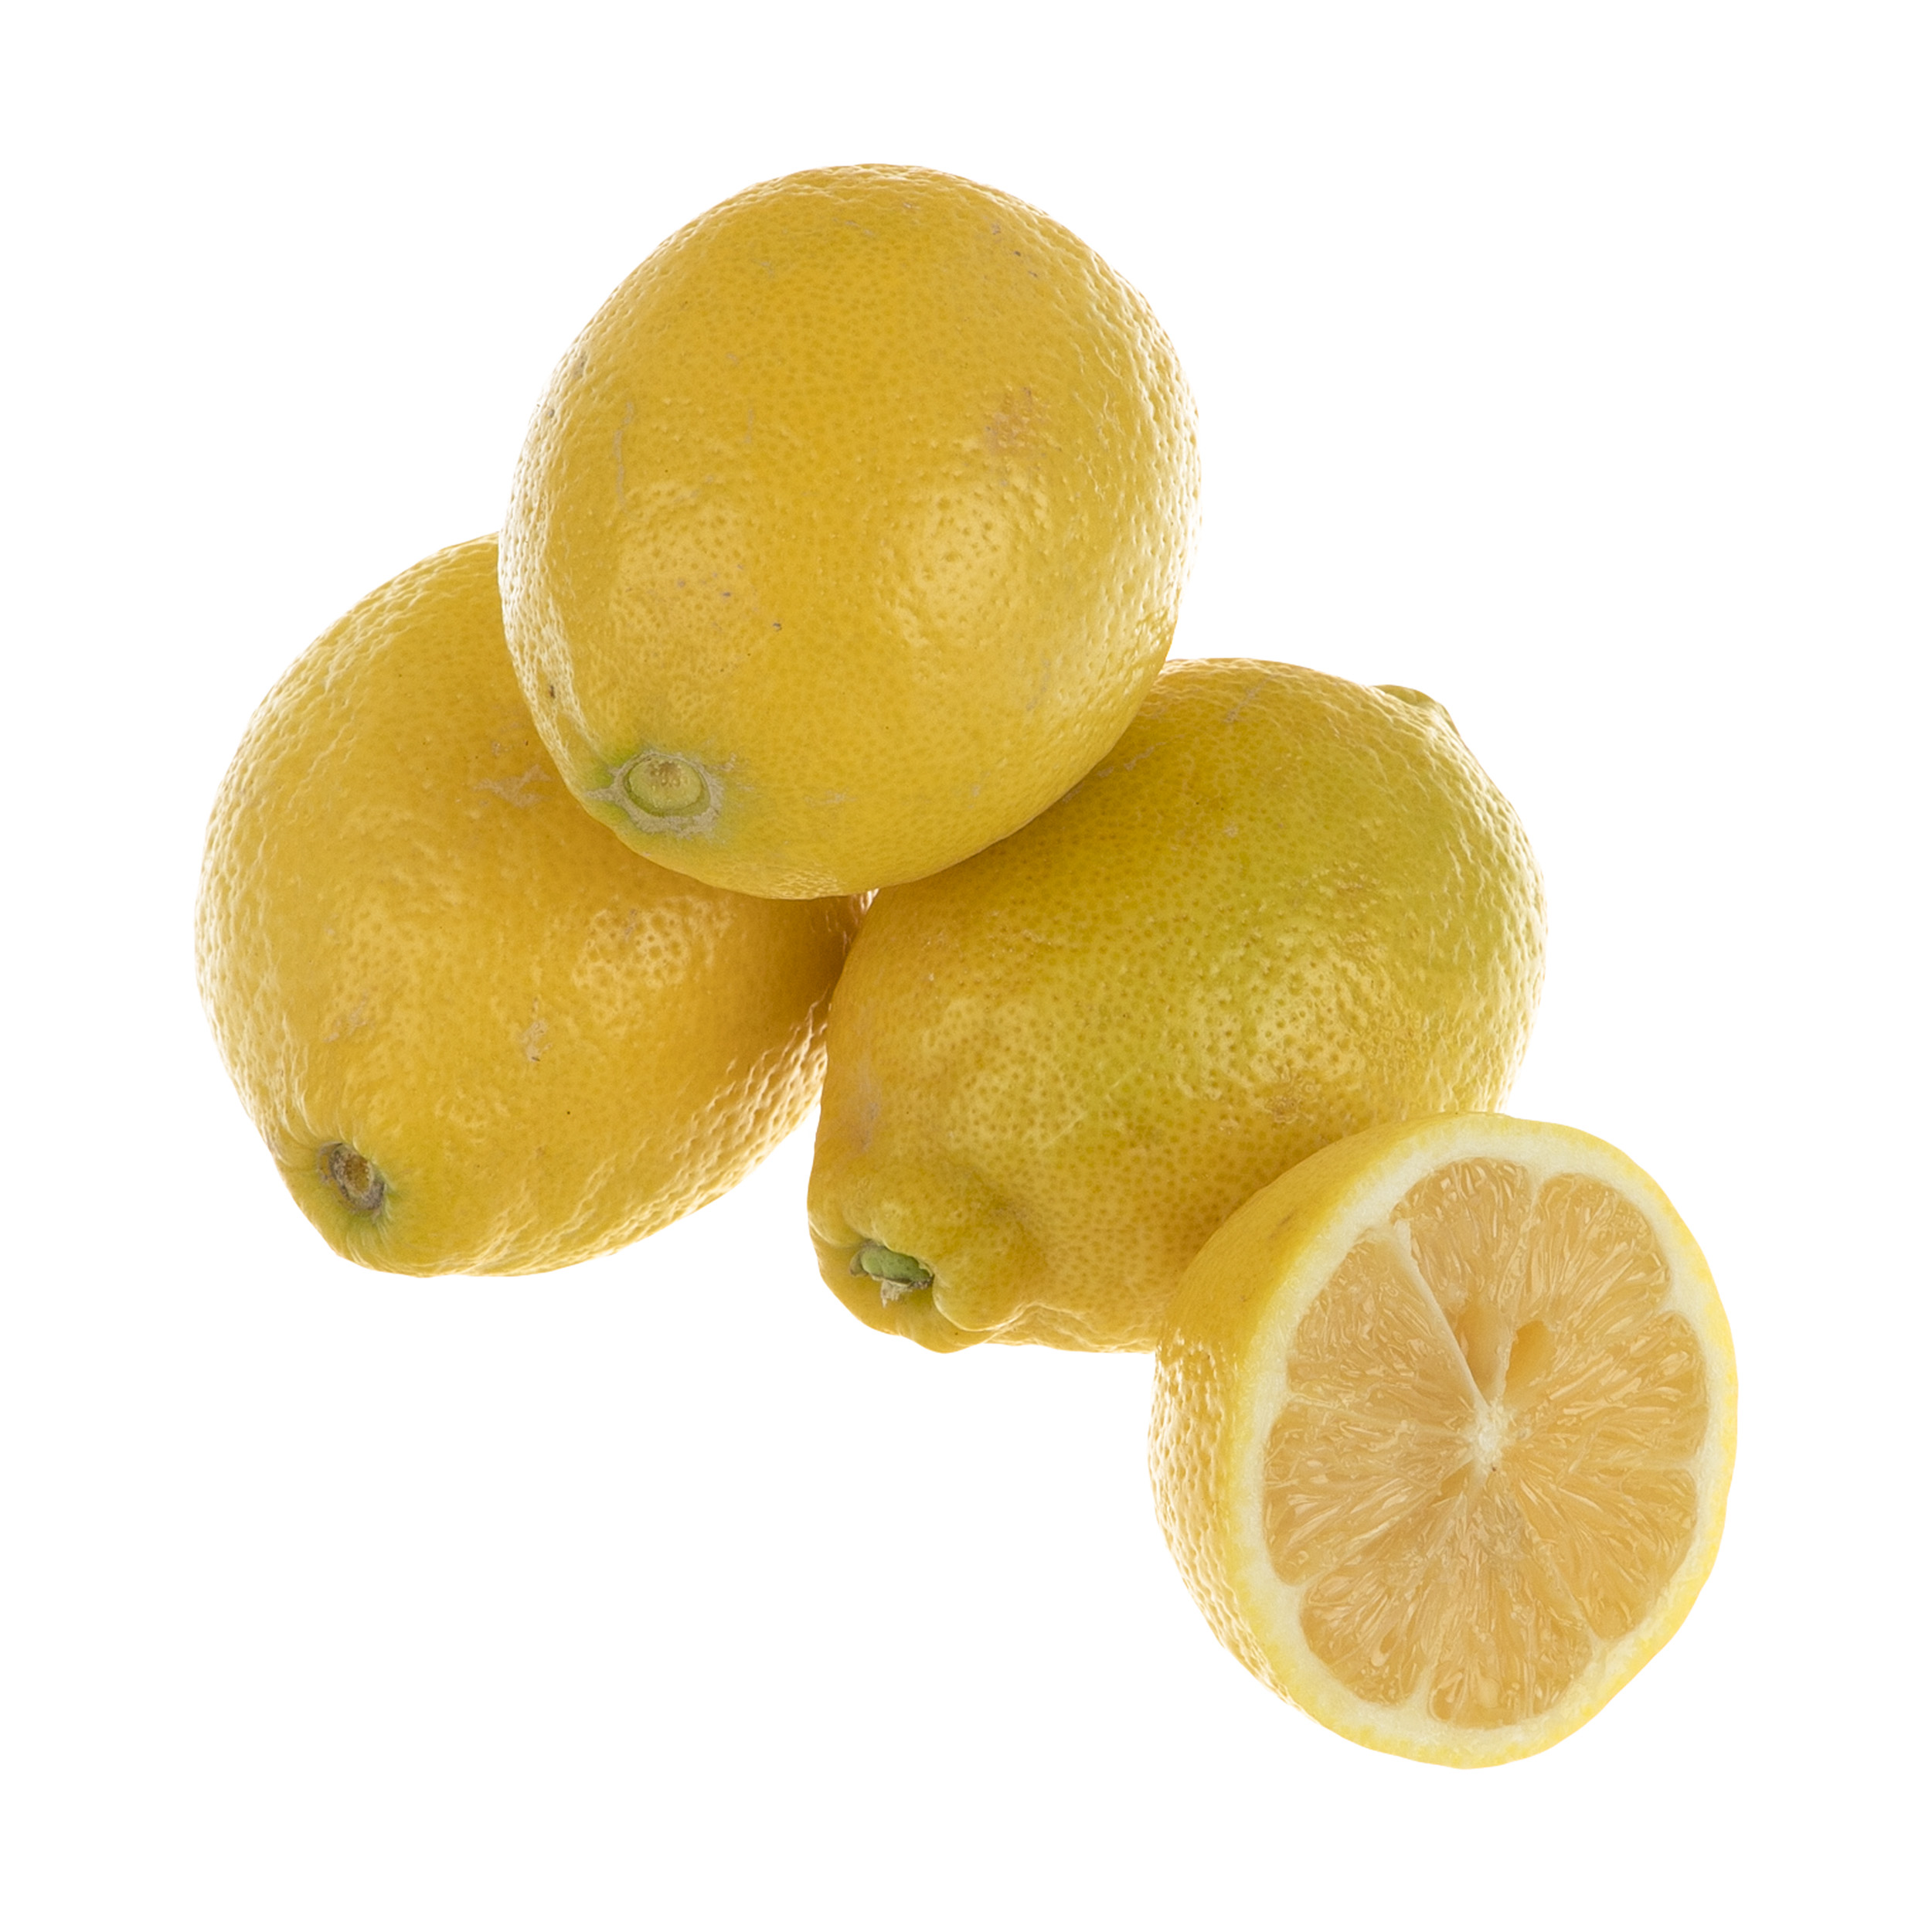 لیمو ترش سنگی فله درجه یک - 1 کیلوگرم